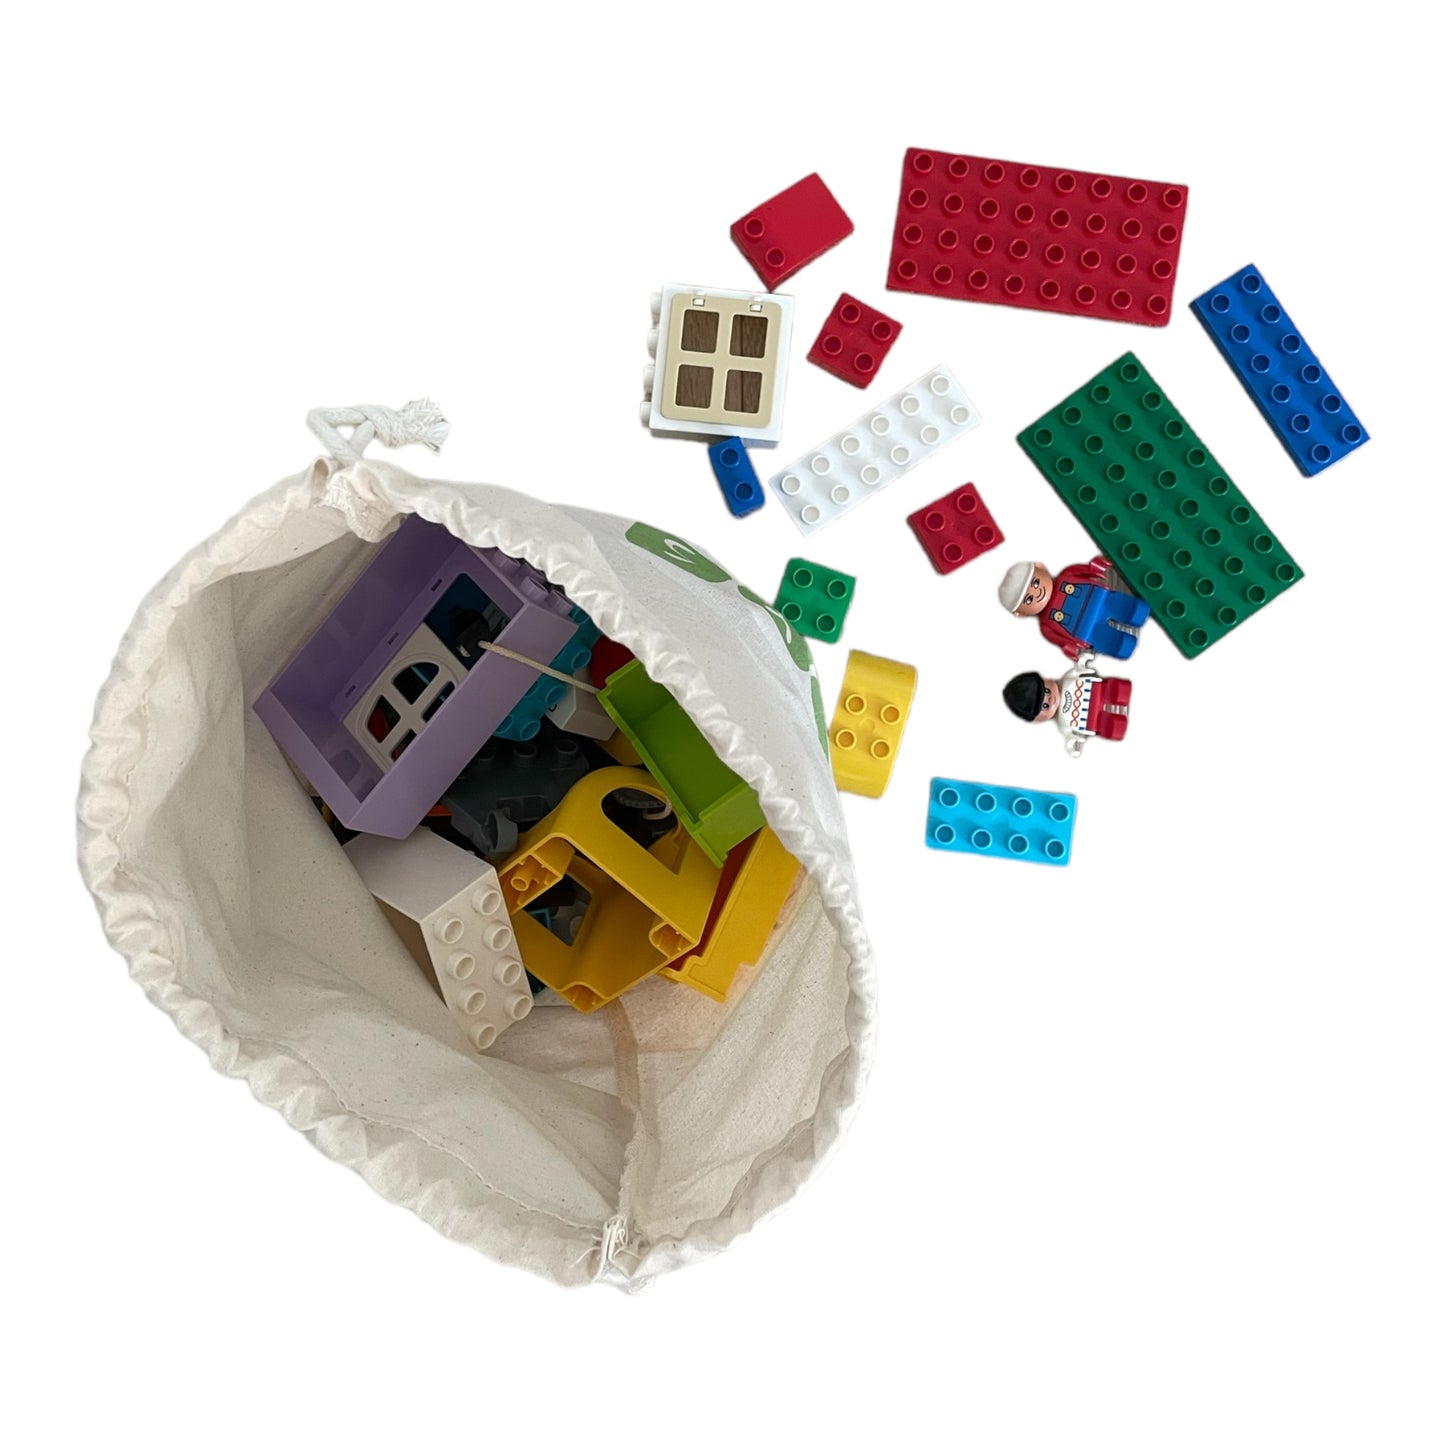 LEGO® DUPLO® Beutel mit 1 Kilo Gebrauchte, gereinigte Lego Duplo-Steine. So gut wie neu!